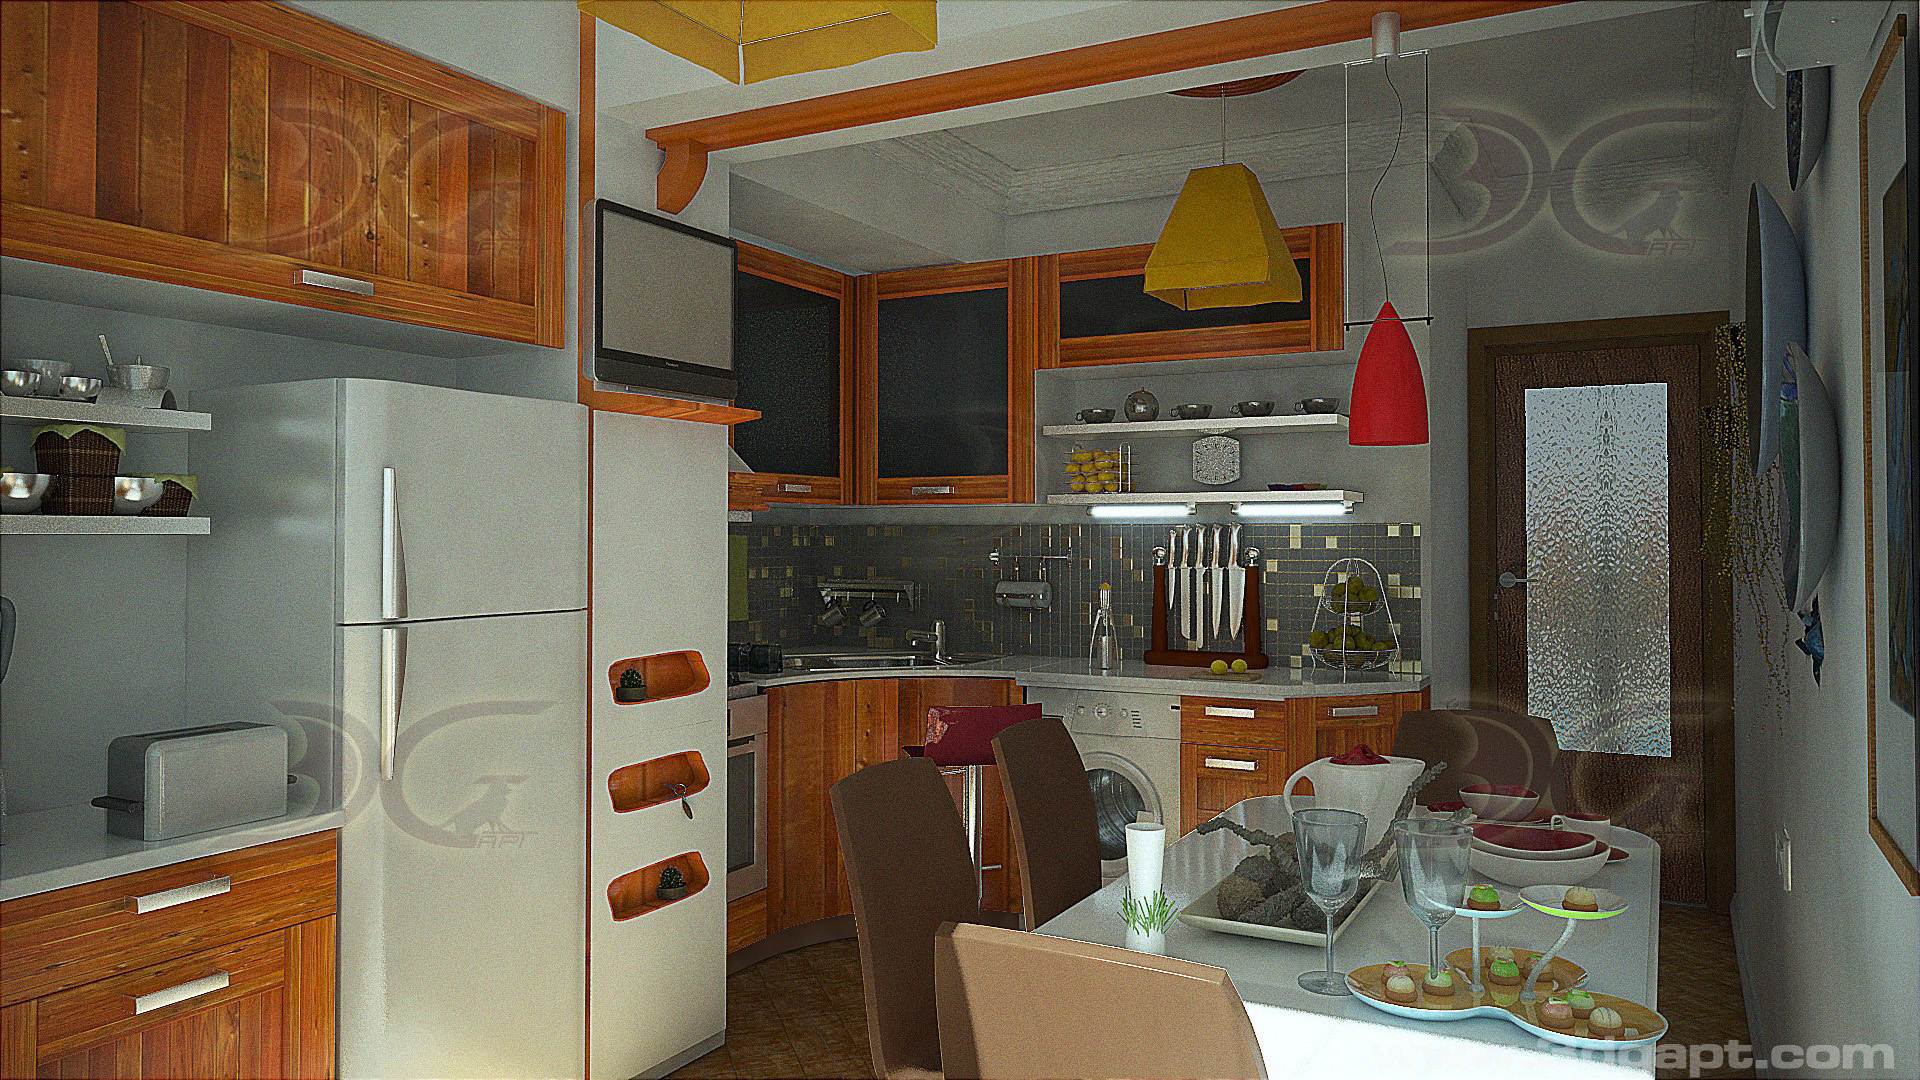 architecture interior kitchen-3versions 17